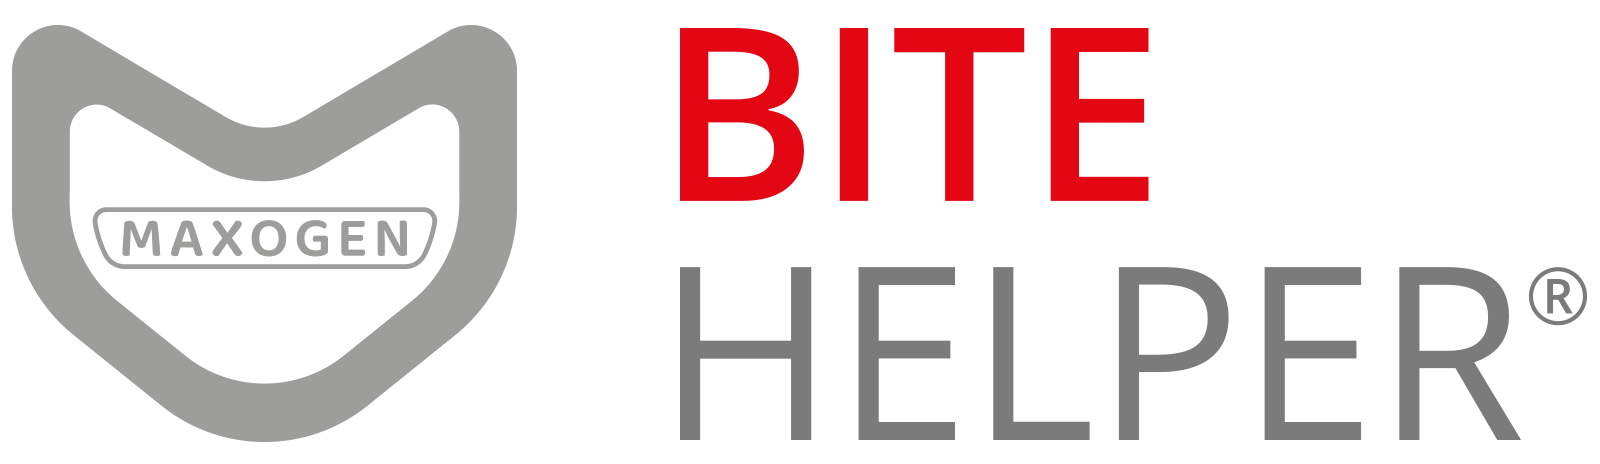 BITE HELPER Logo